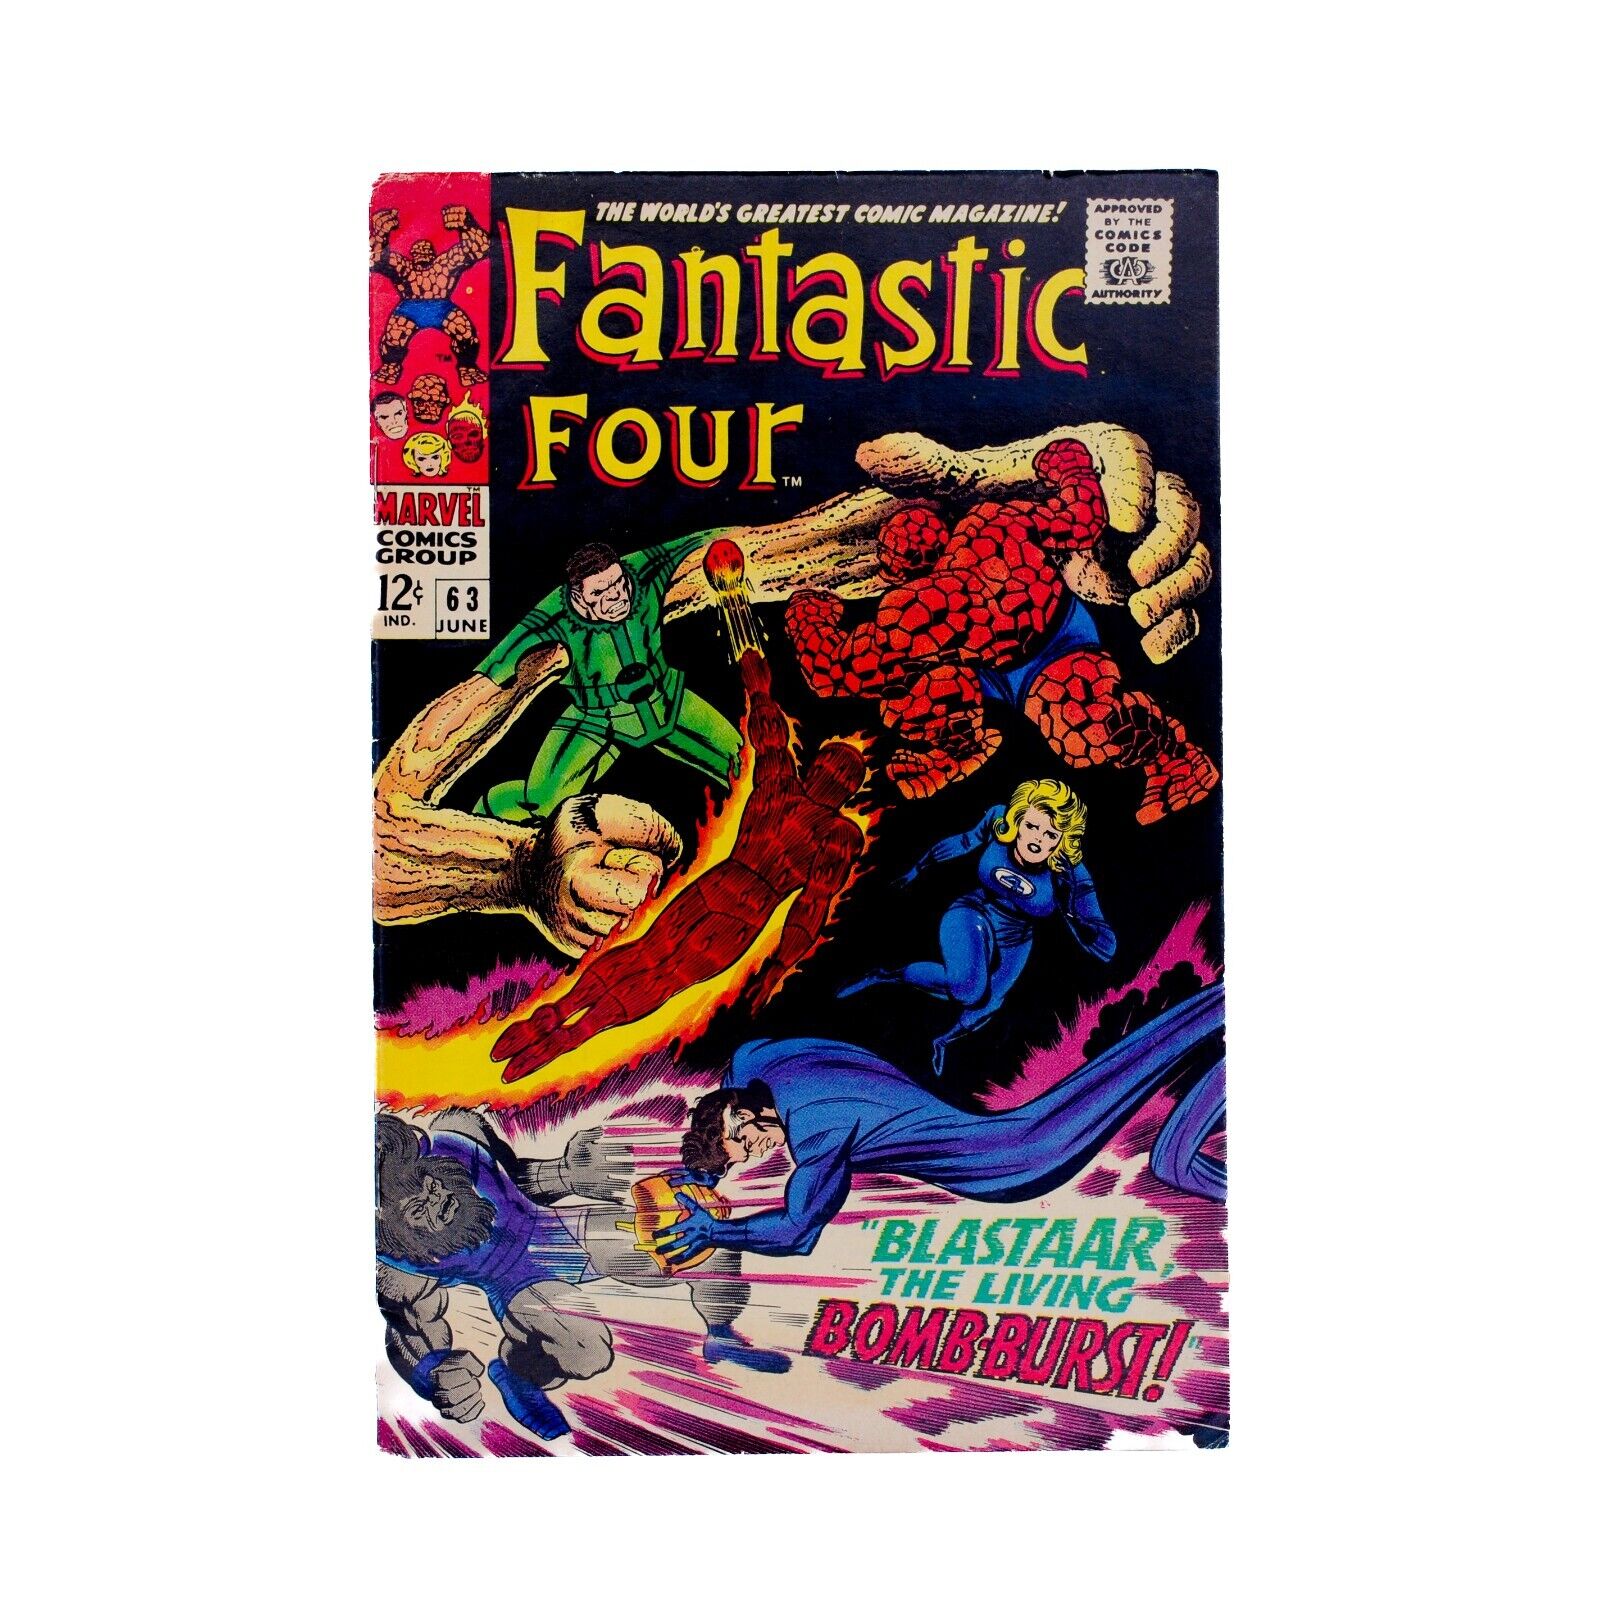 Fantastic Four Volume 1, Issue #63 (June 1967)